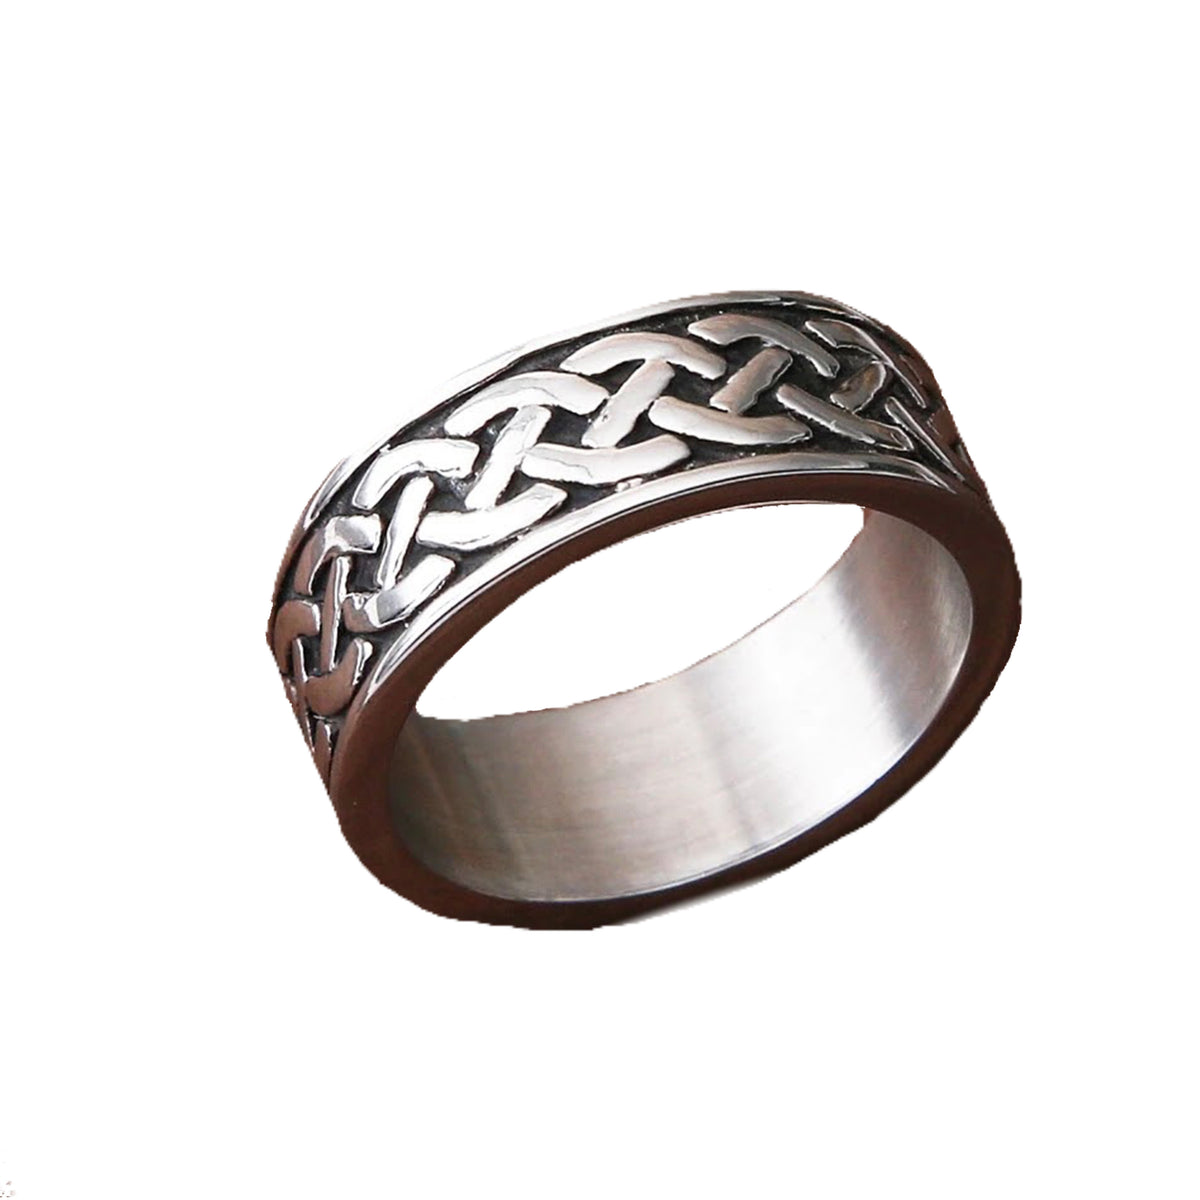 Nordic ring